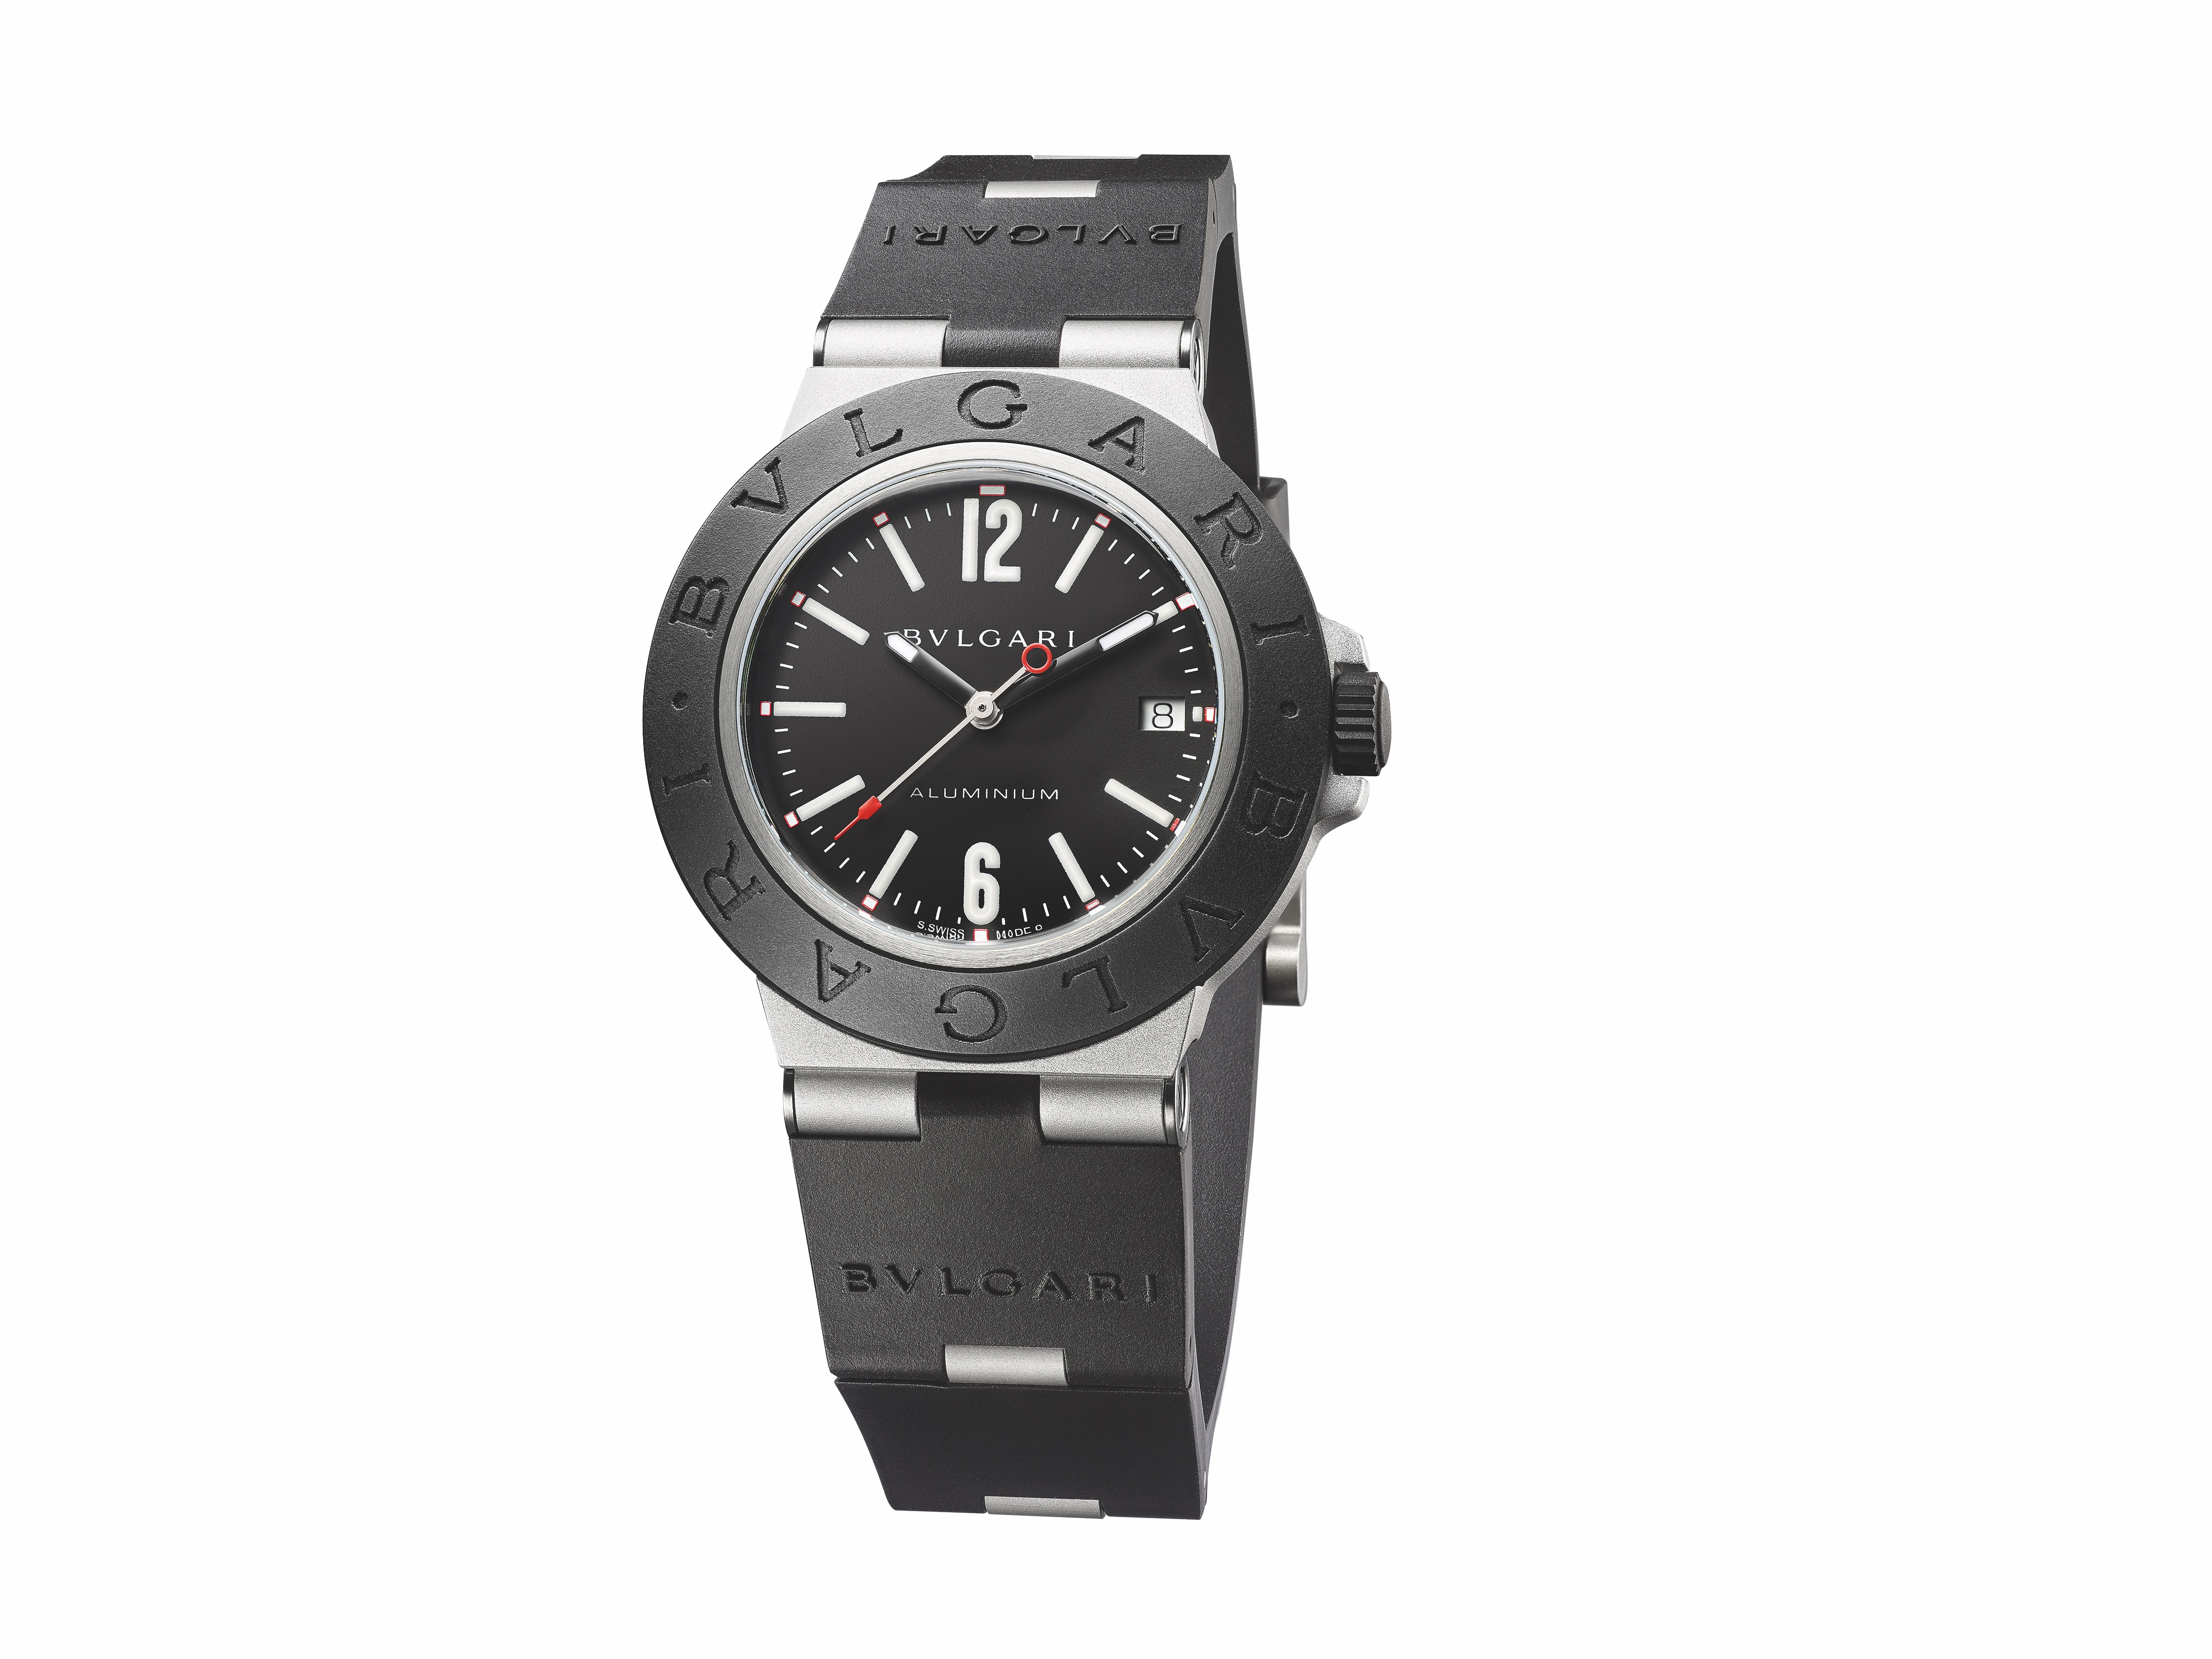 Bulgari's Aluminium watch model